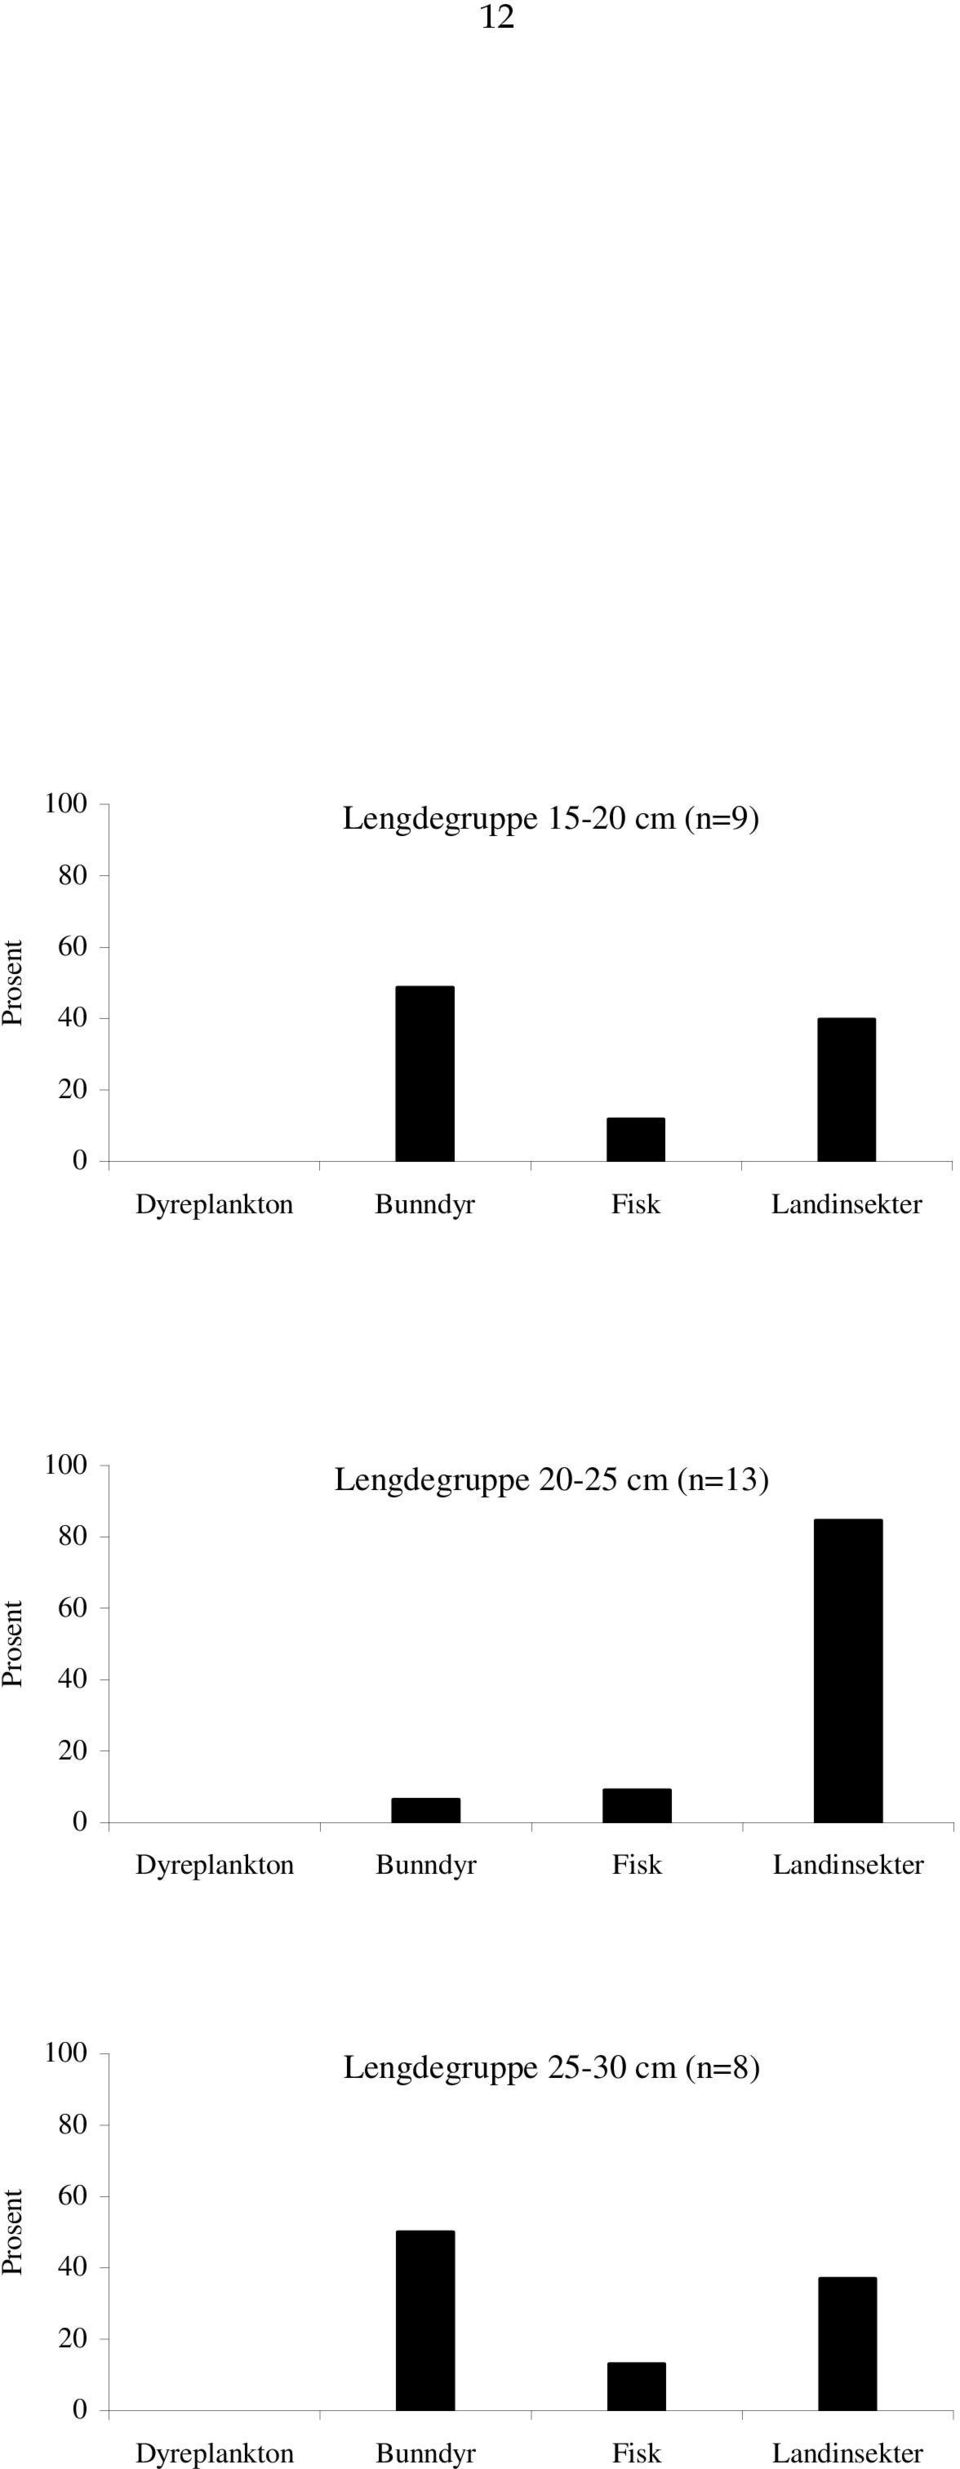 Prosent 6 4 2 Dyreplankton Bunndyr Fisk Landinsekter 1 8